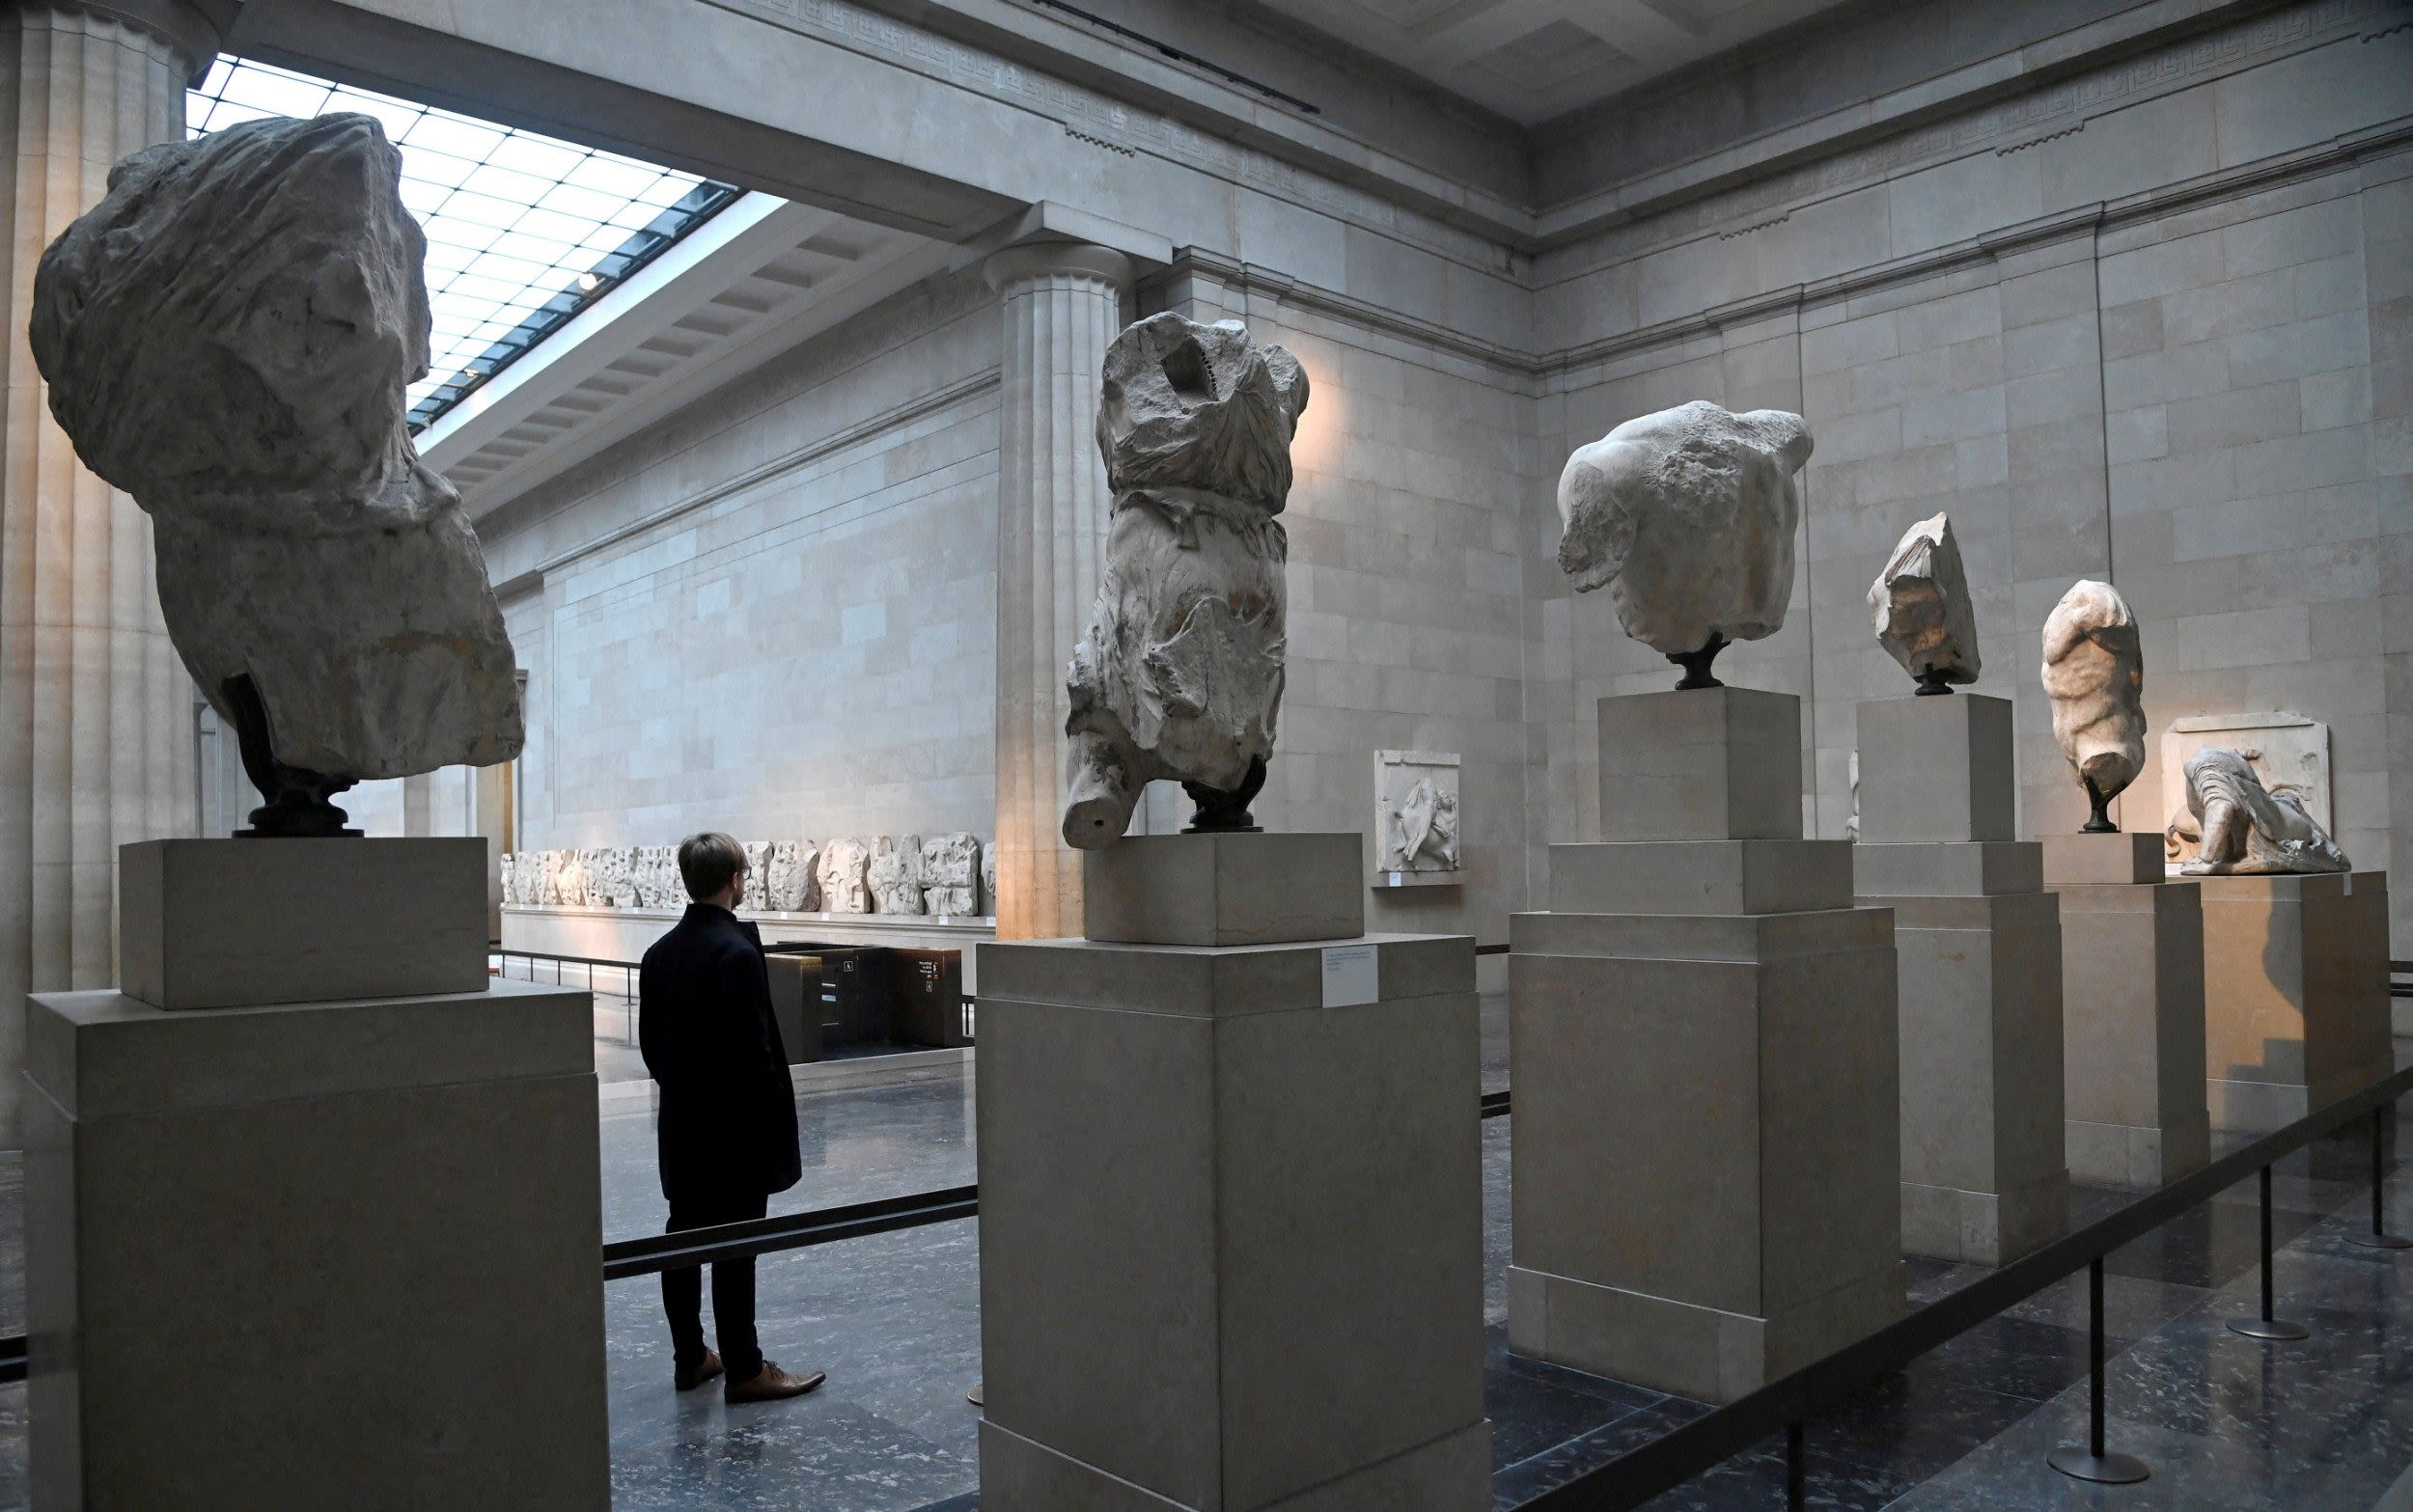 British Museum explores repatriation of more contested artefacts